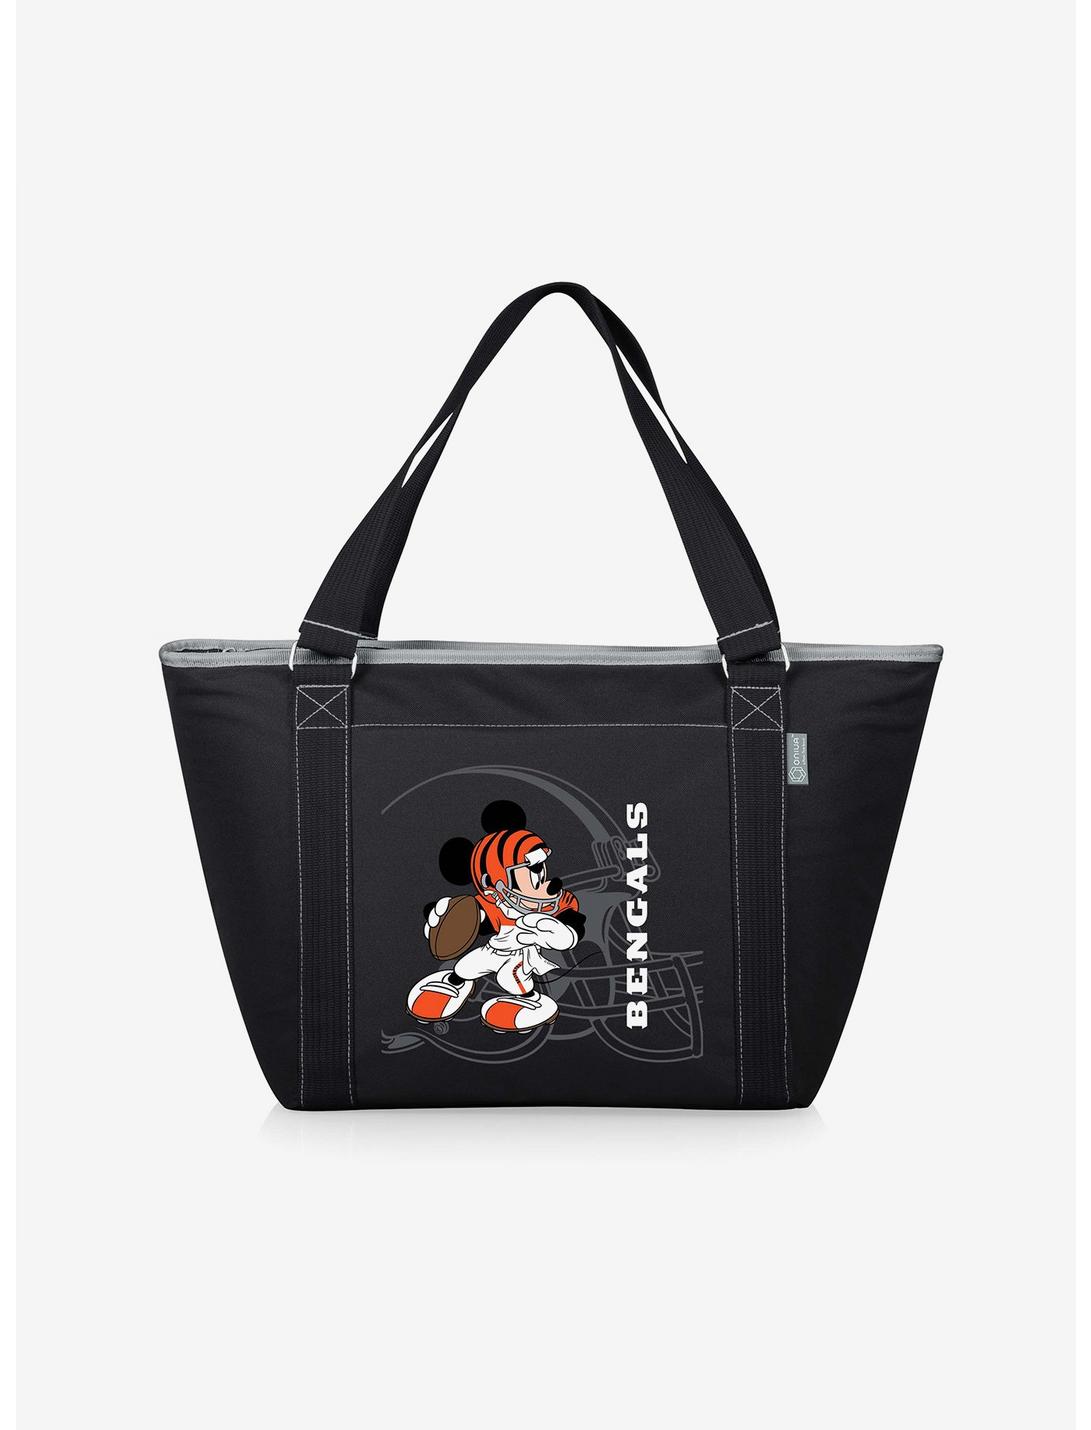 Disney Mickey Mouse NFL Cincinnati Bengals Tote Cooler Bag, , hi-res